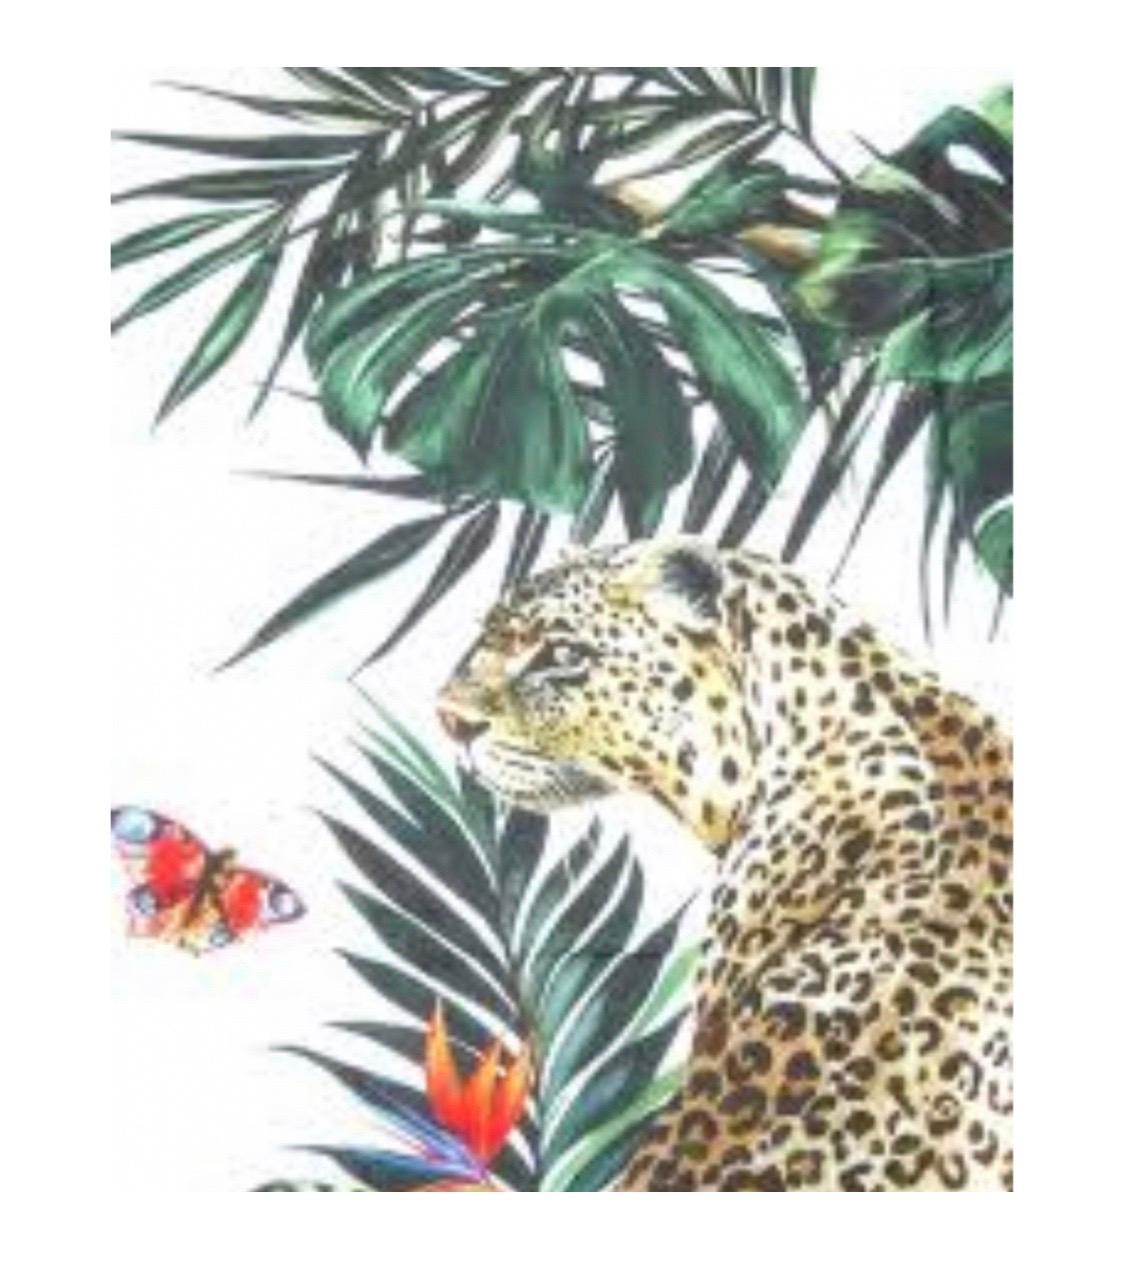 Red Dolce & Gabbana Jungle Leopard
cashmere scarf